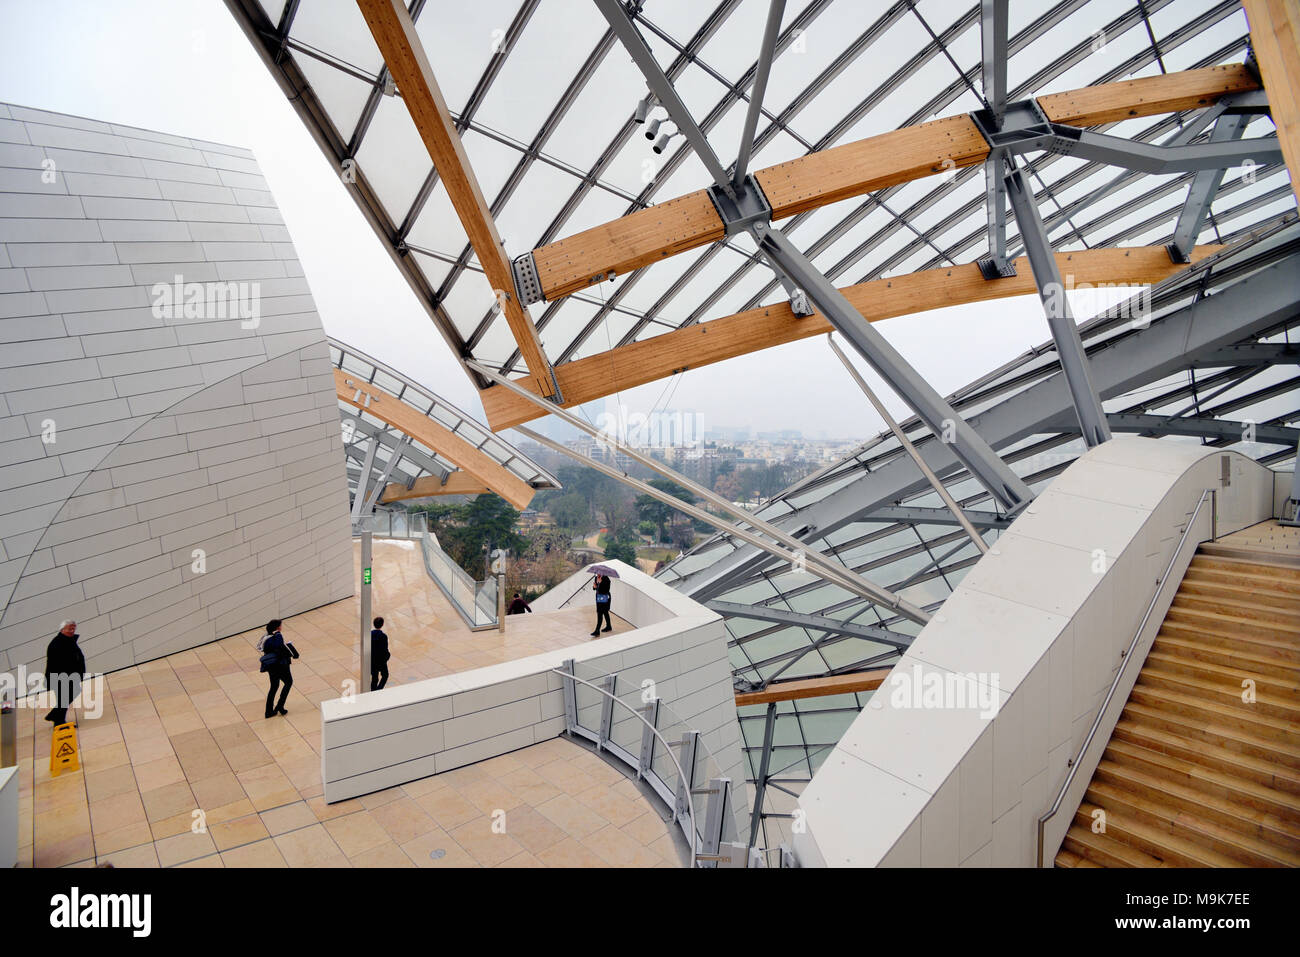 Terrasse sur le toit de la fondation Louis Vuitton Art Museum & Cultural Center (2006-14) conçu par Frank Gehry, Paris, France Banque D'Images